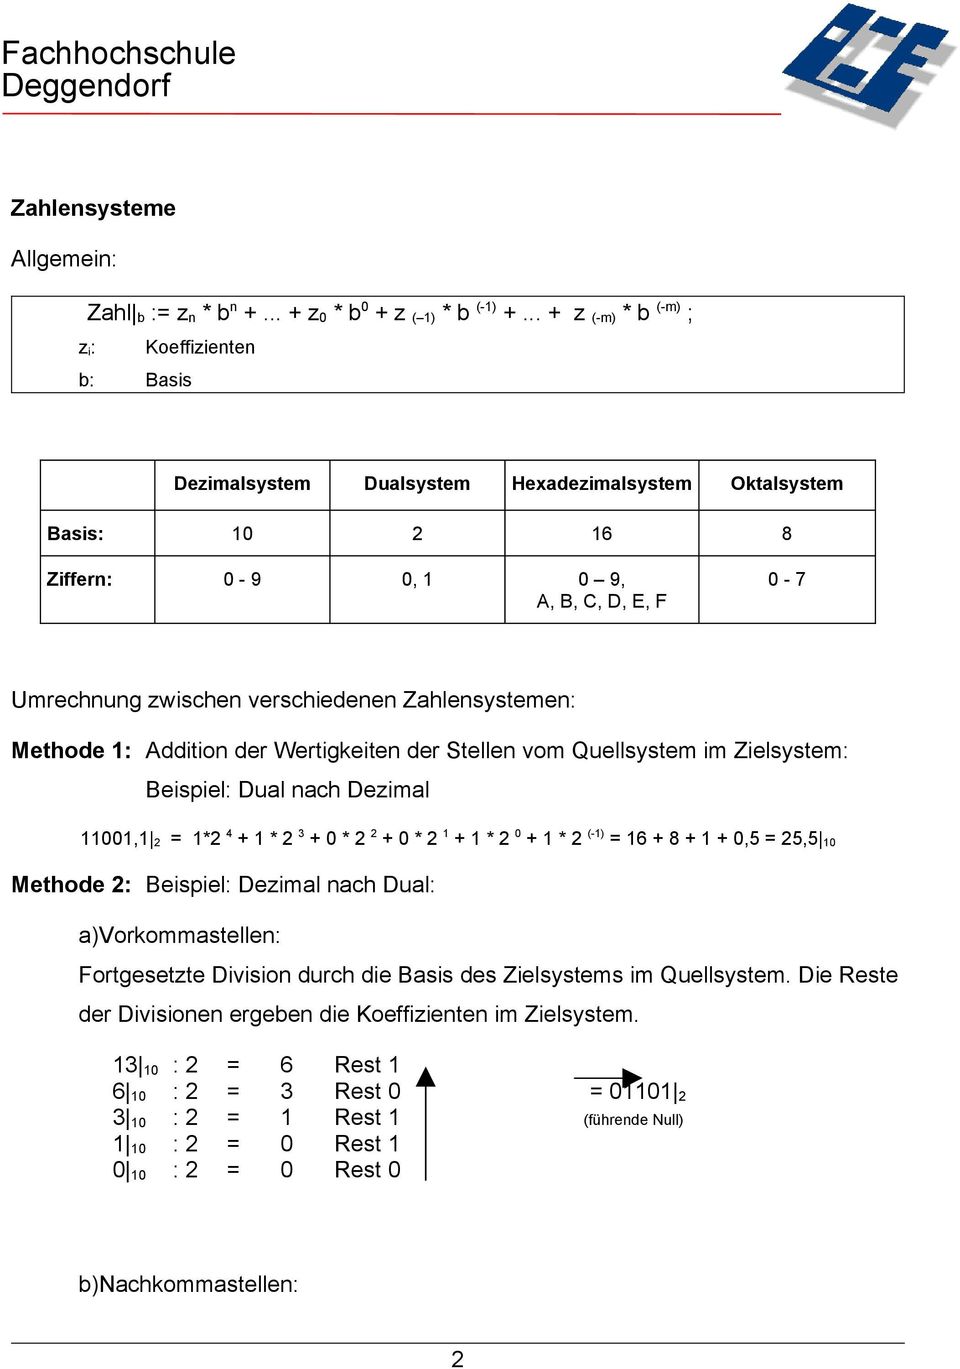 Zahlensystemen: Methode : Addition der Wertigkeiten der Stellen vom Quellsystem im Zielsystem: Beispiel: Dual nach Dezimal, 2 = *2 4 + * 2 3 + * 2 2 + * 2 + * 2 + * 2 (-) = 6 + 8 + +,5 =